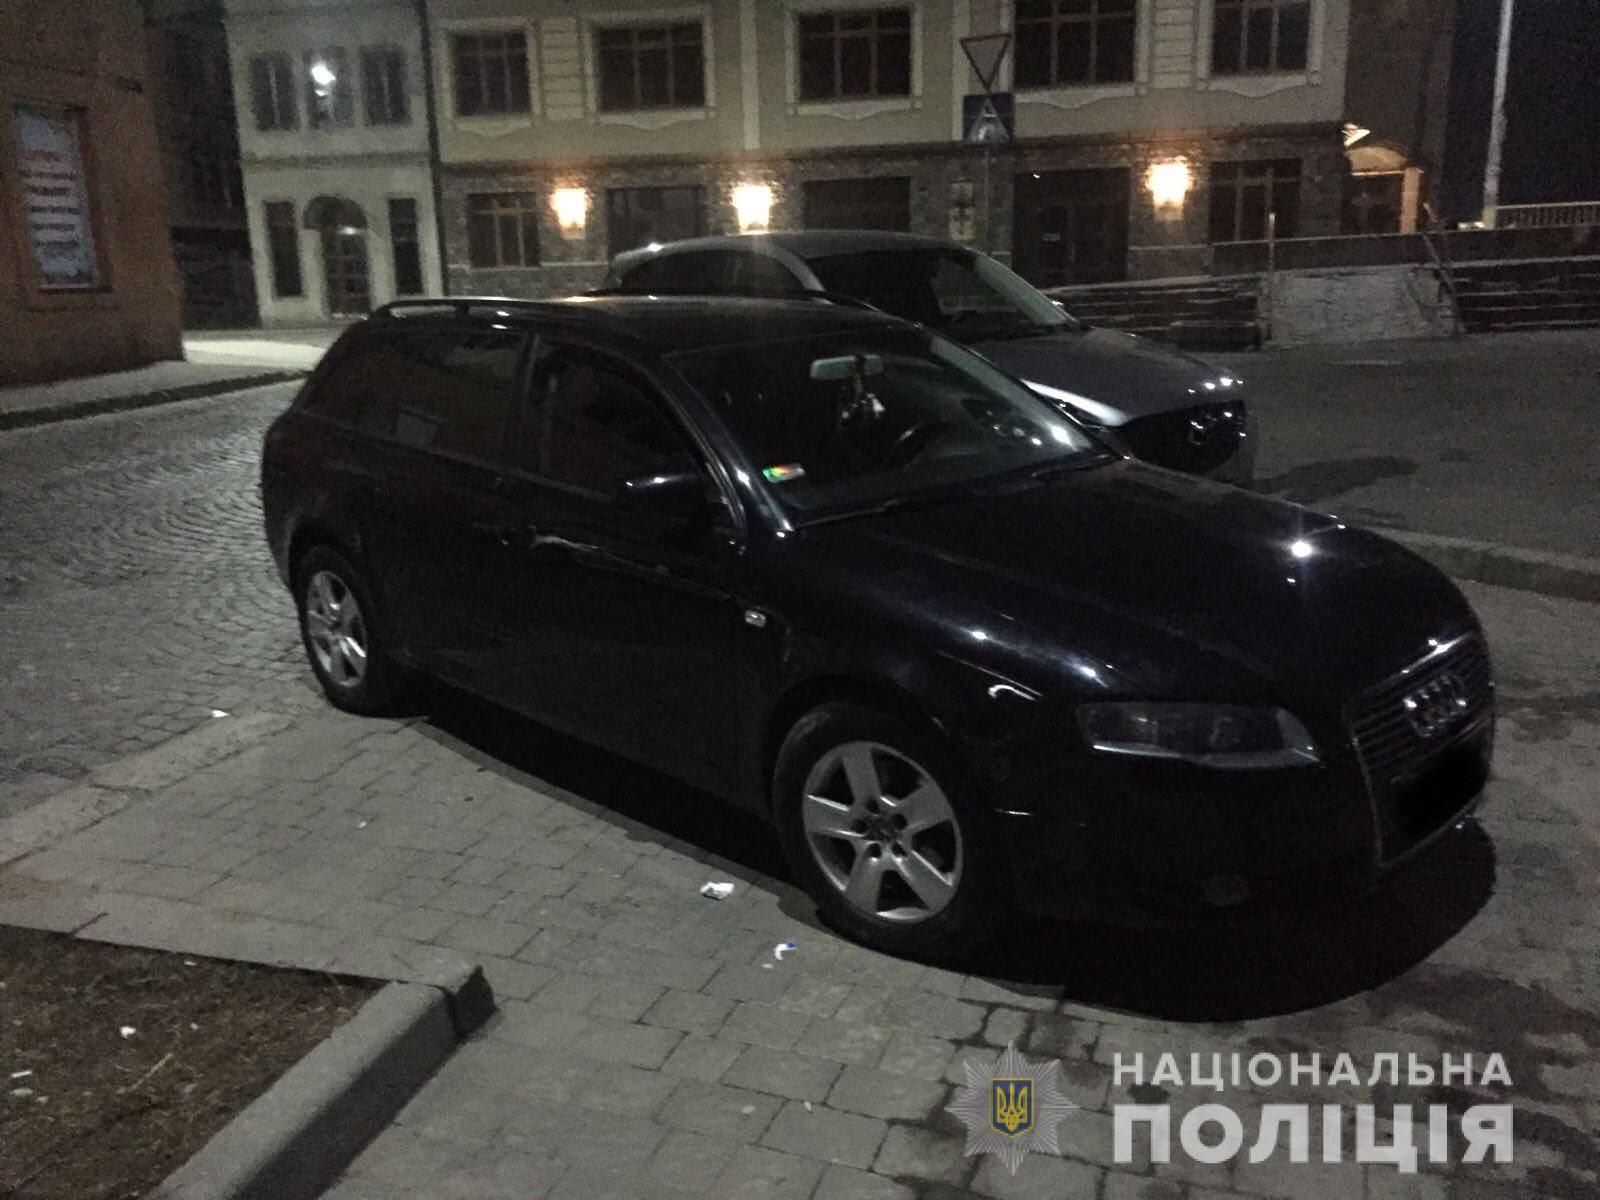 Мешканець Мукачева силою відібрав у знайомого мобільний телефон і втік на власному автомобілі (ФОТО)